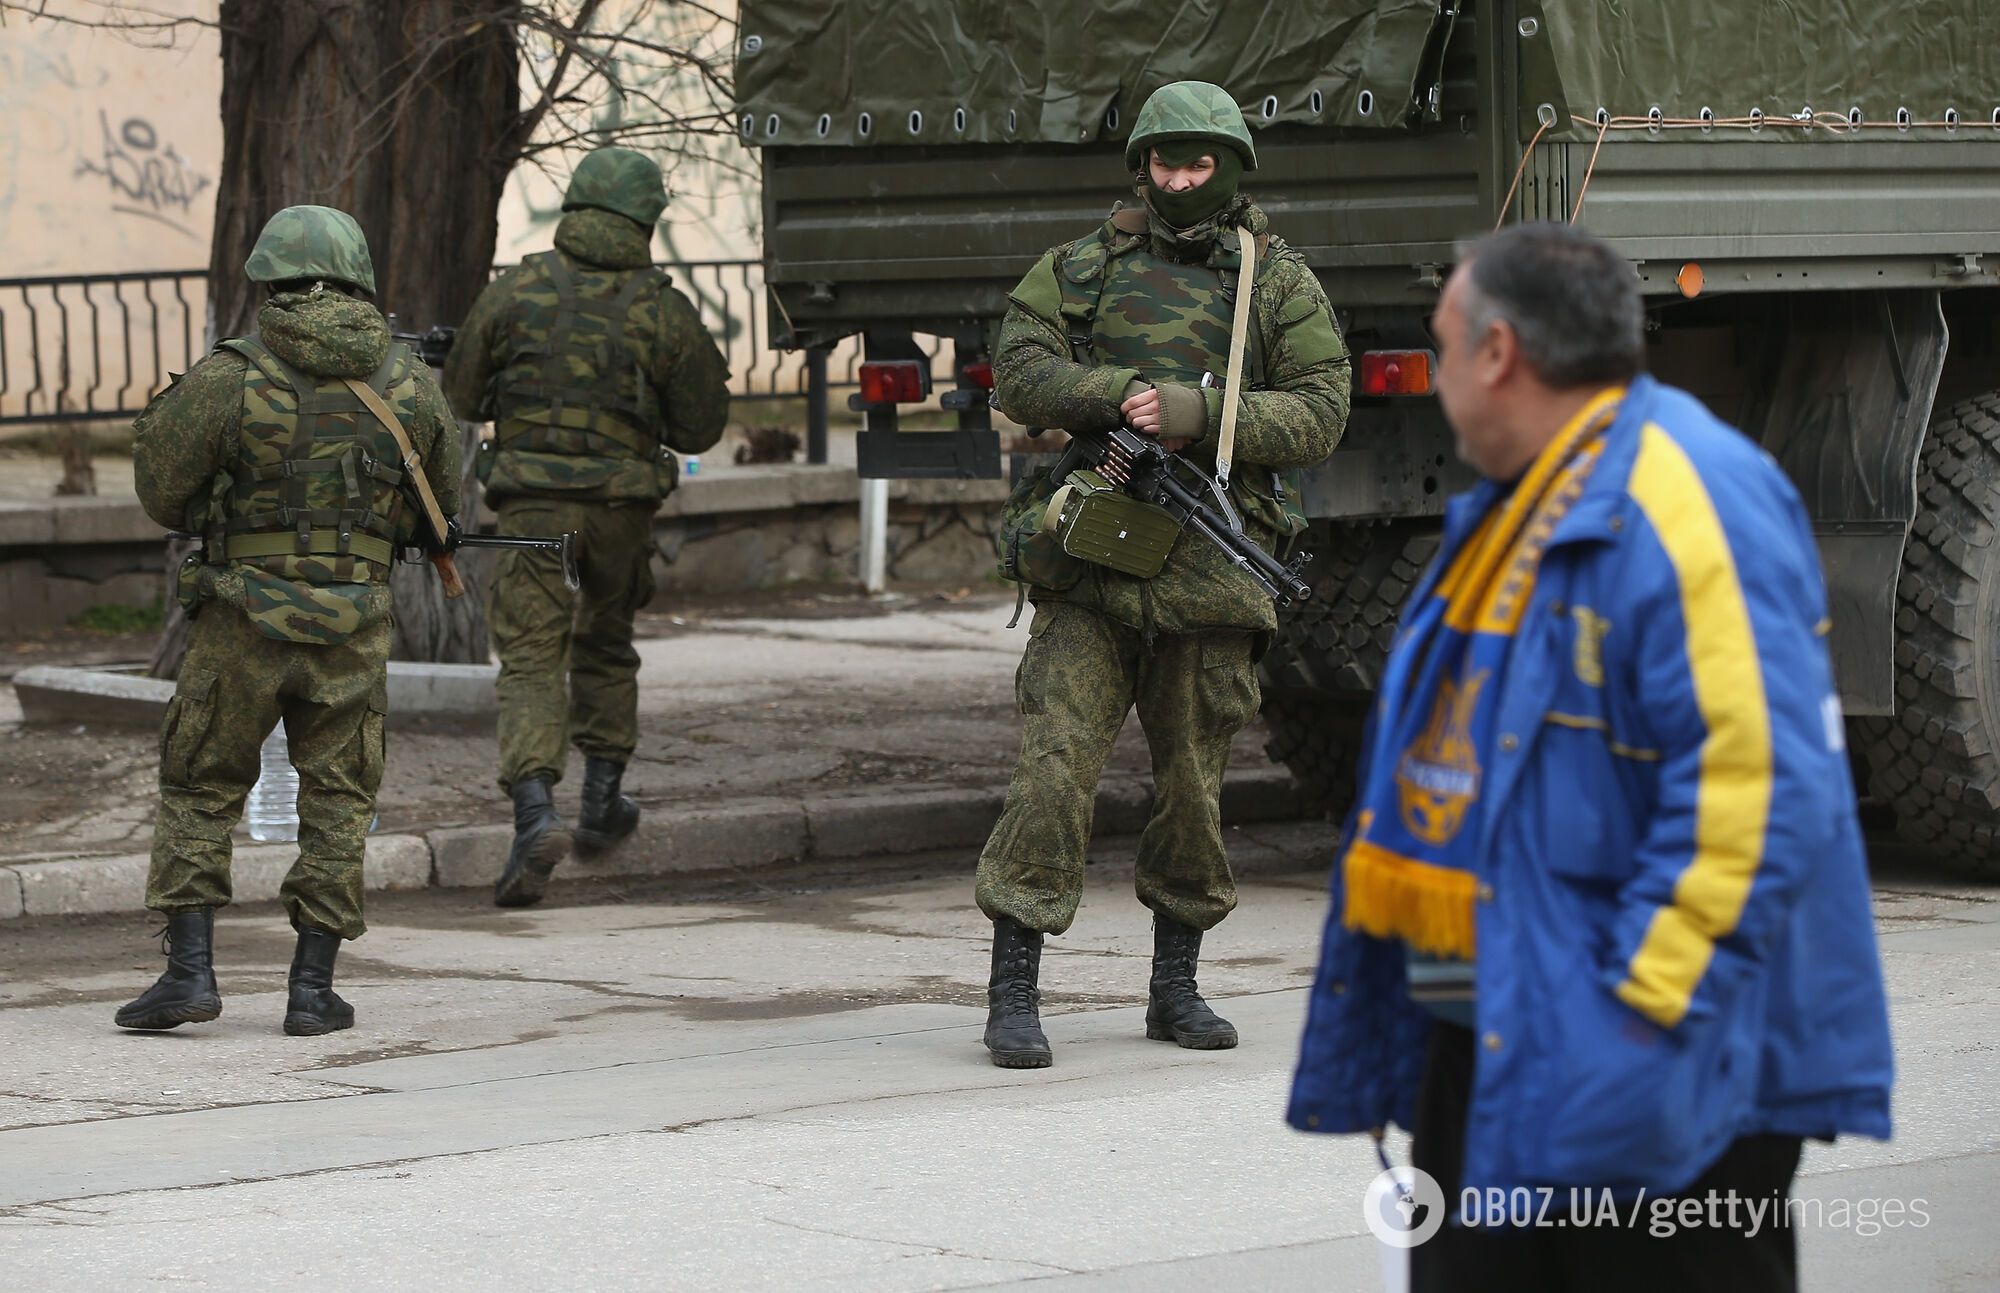 Российские оккупационные войска в Крыму, 2014 год